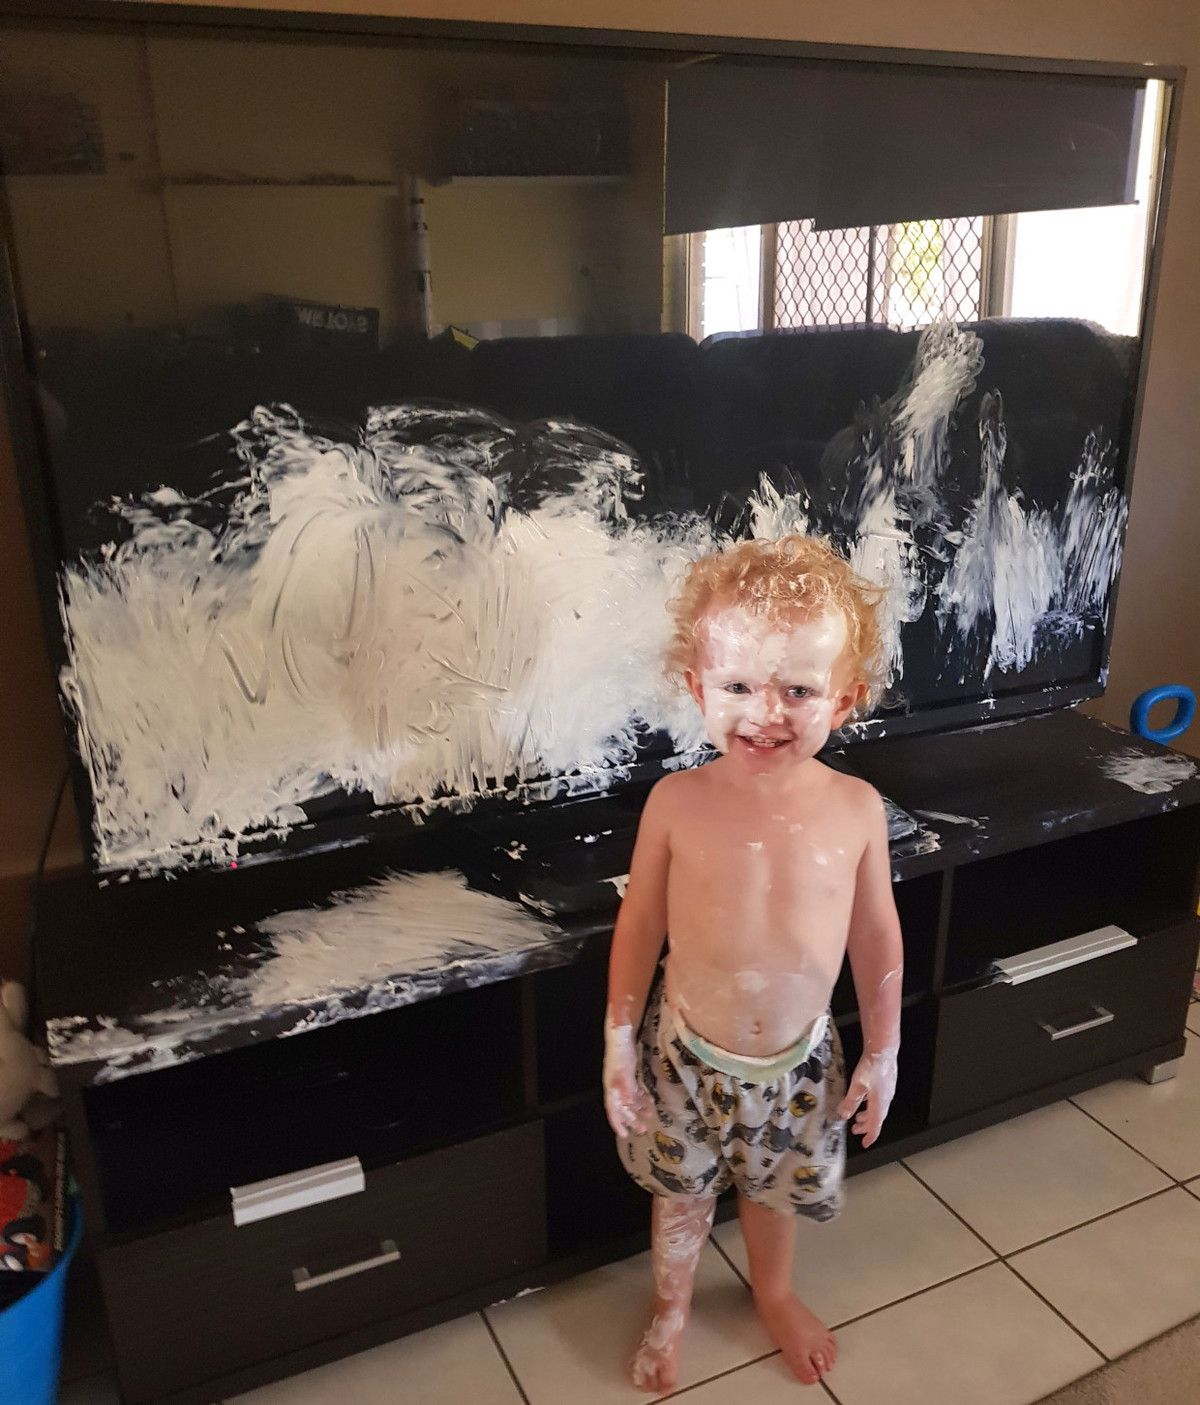 Поки мами не було у кімнаті, малюк вирішив показати свій художній хист, розмалювавши кремом телевізор. Короткочасна відсутність мами у кімнаті завершилася тим, що її малюк встиг розмалювати телевізор кремом.